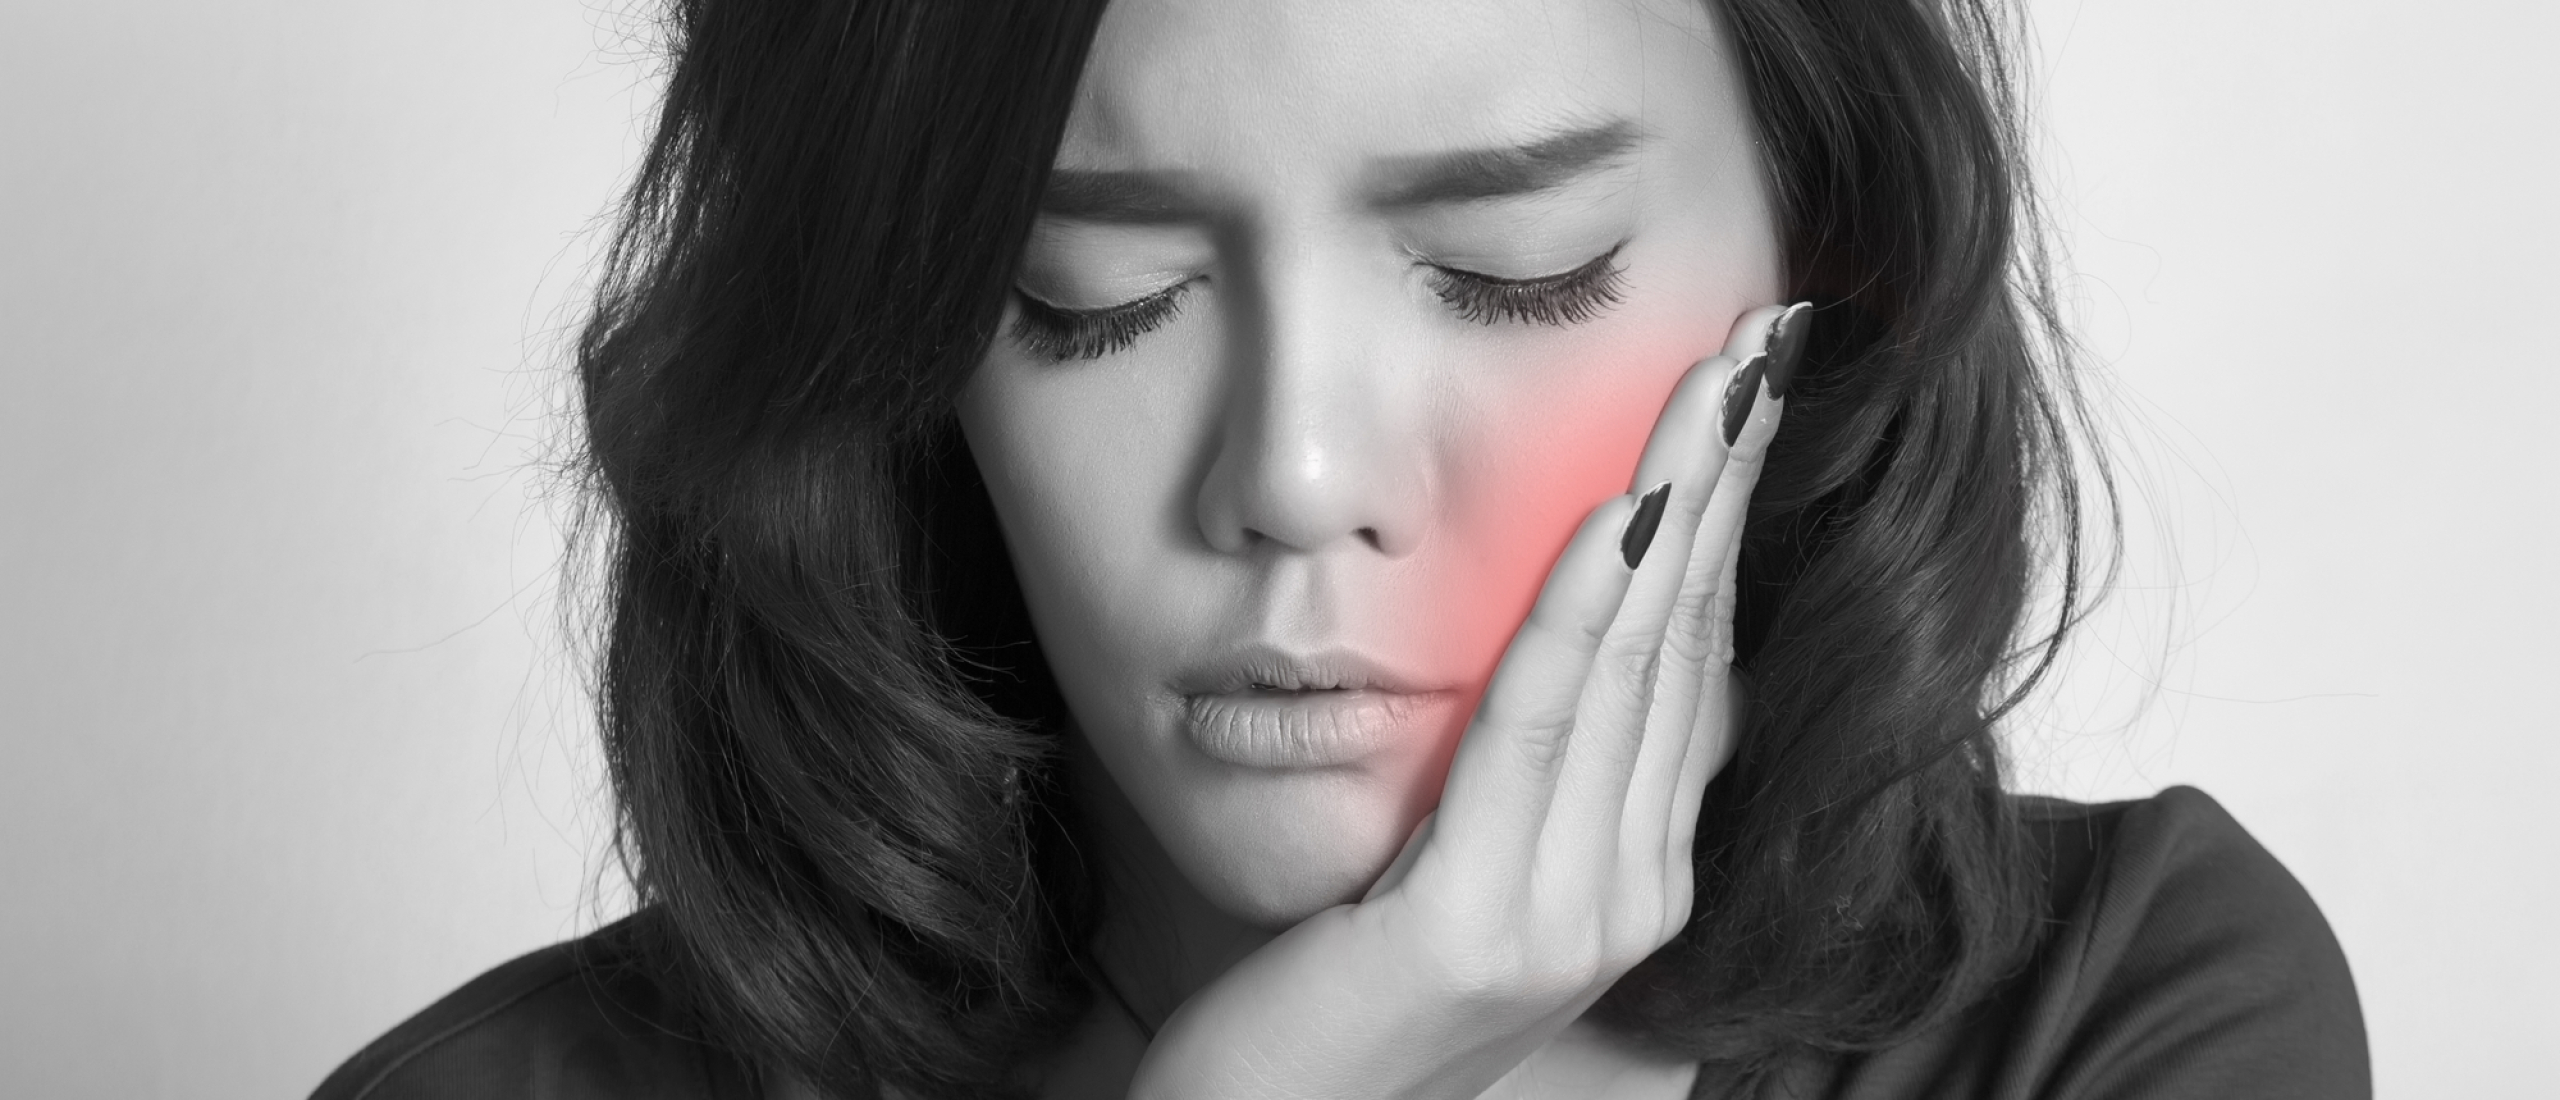 Kies- tandpijn door stress